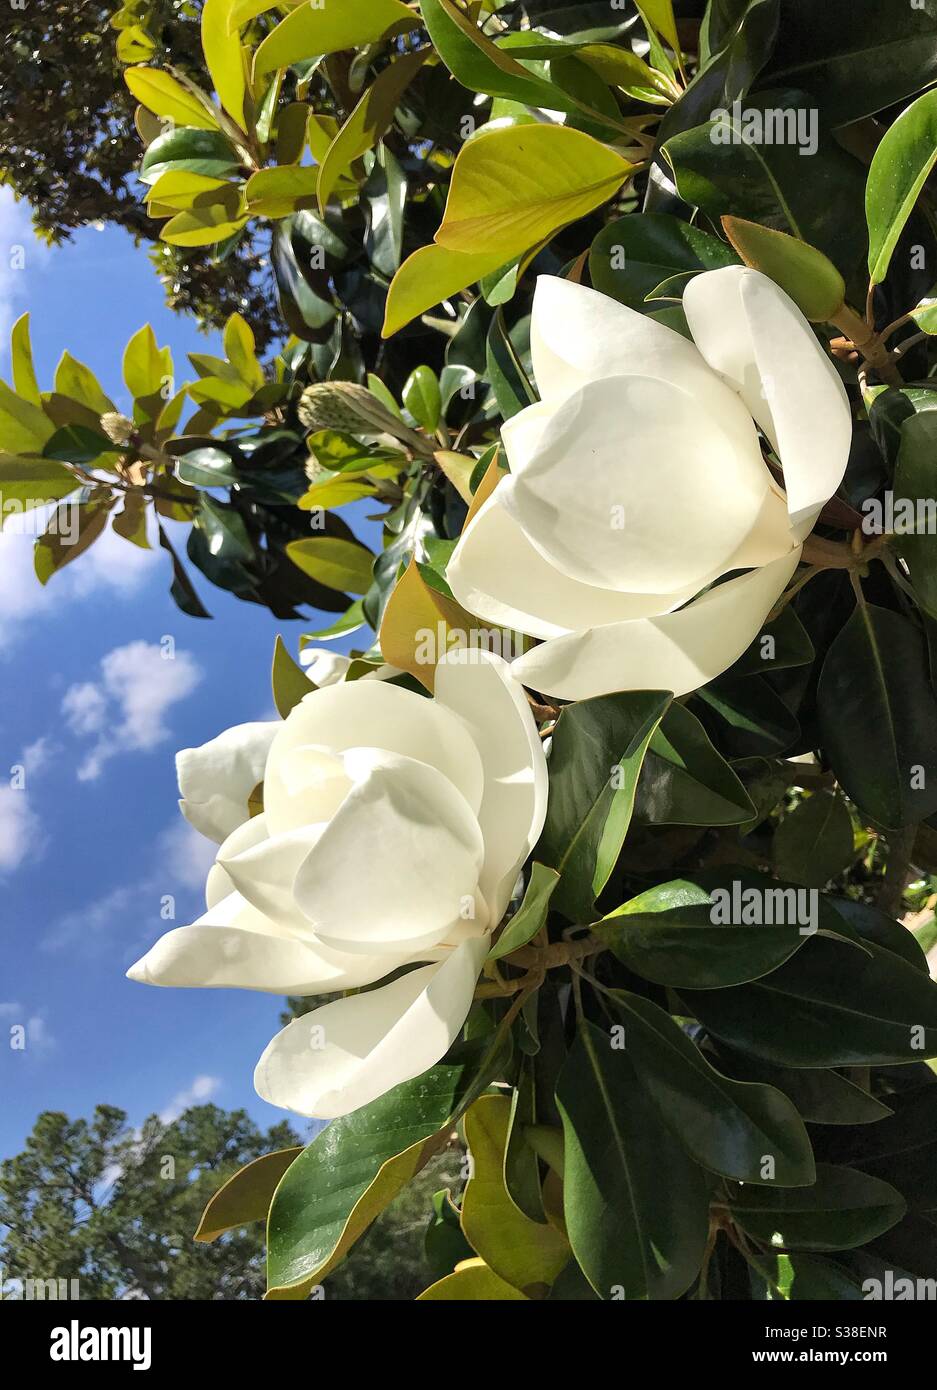 Magnolia tree blooms Stock Photo